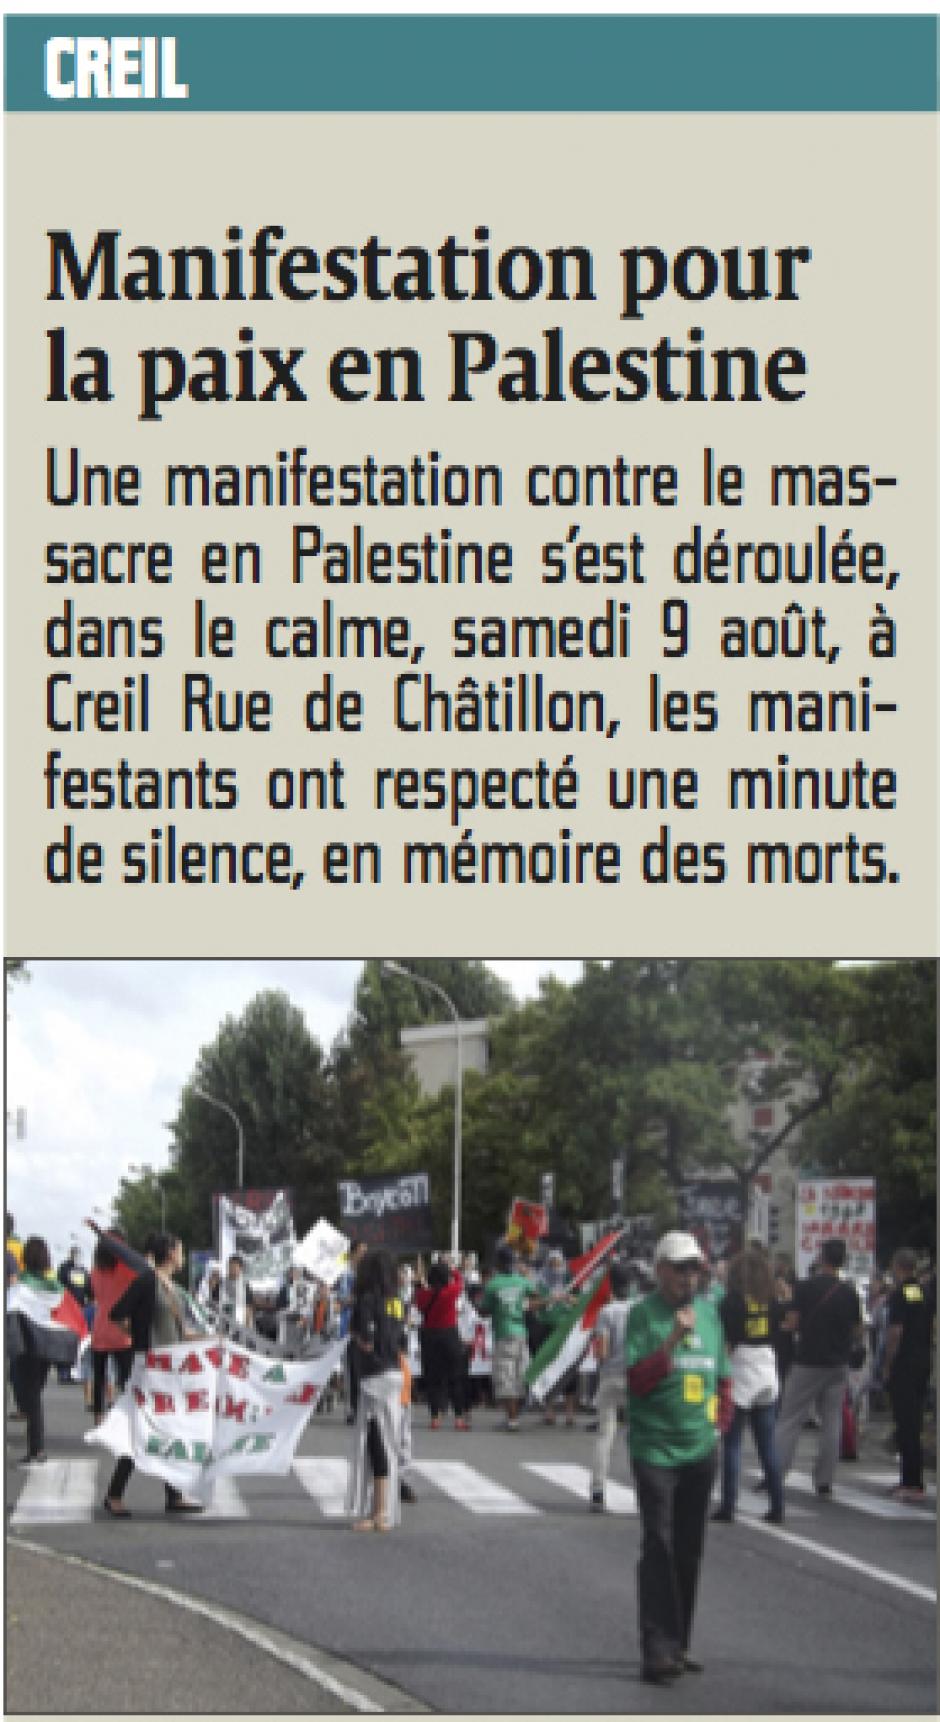 20140812-CP-Creil-Manifestation pour la paix en Palestine